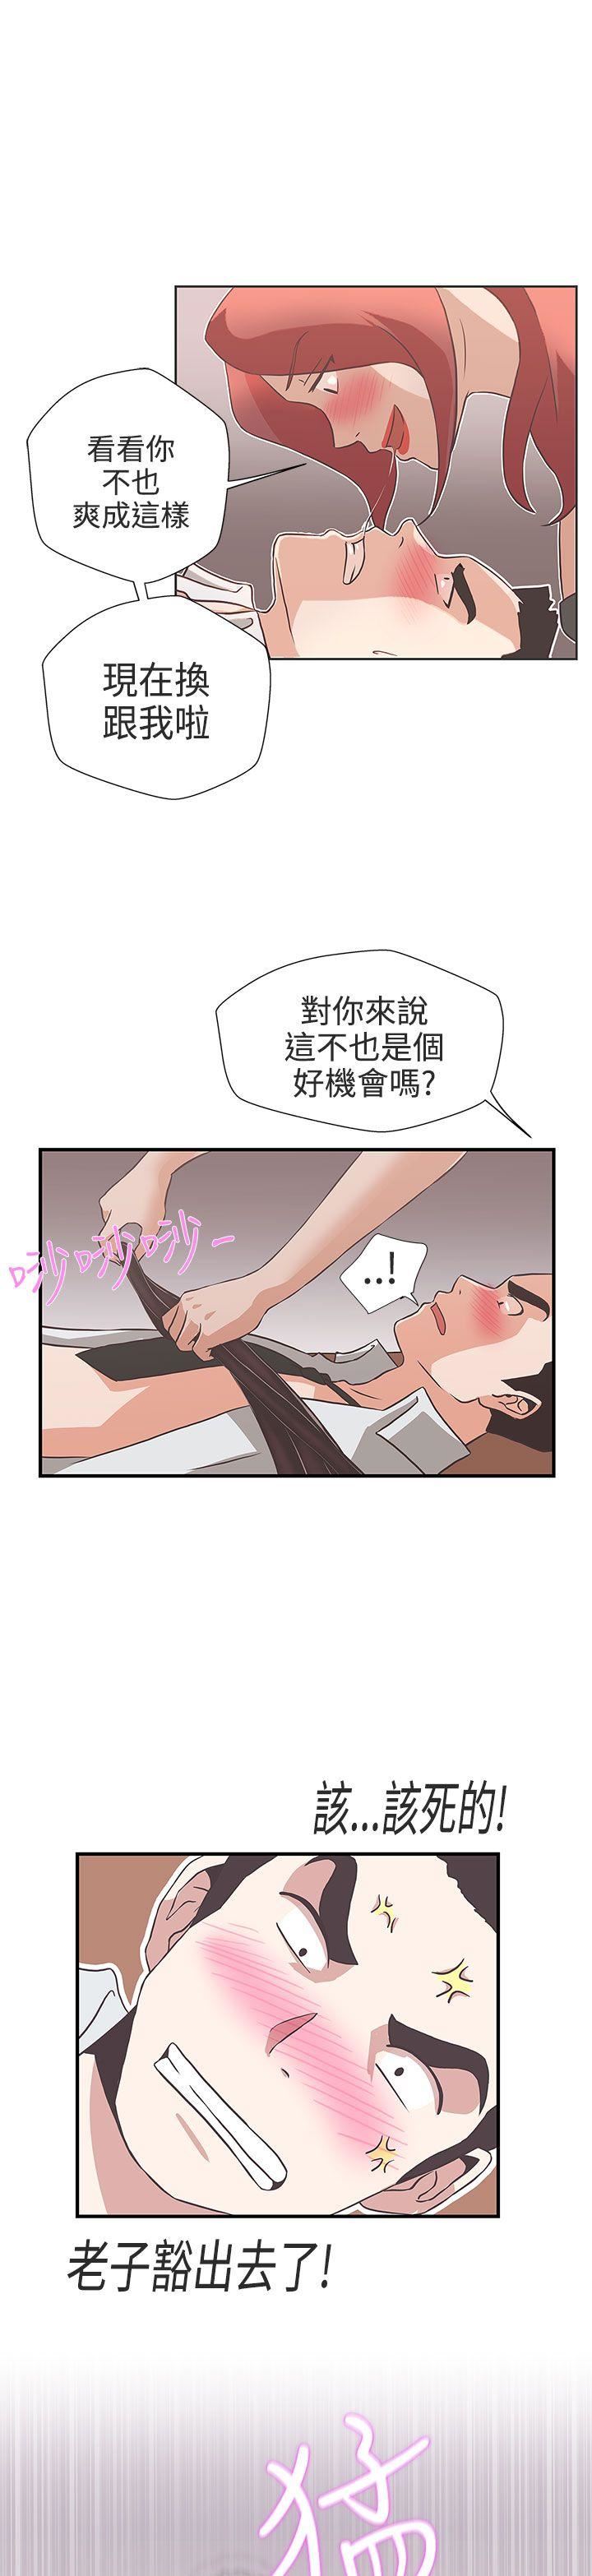 韩国污漫画 LOVE 愛的導航G 第15话 13